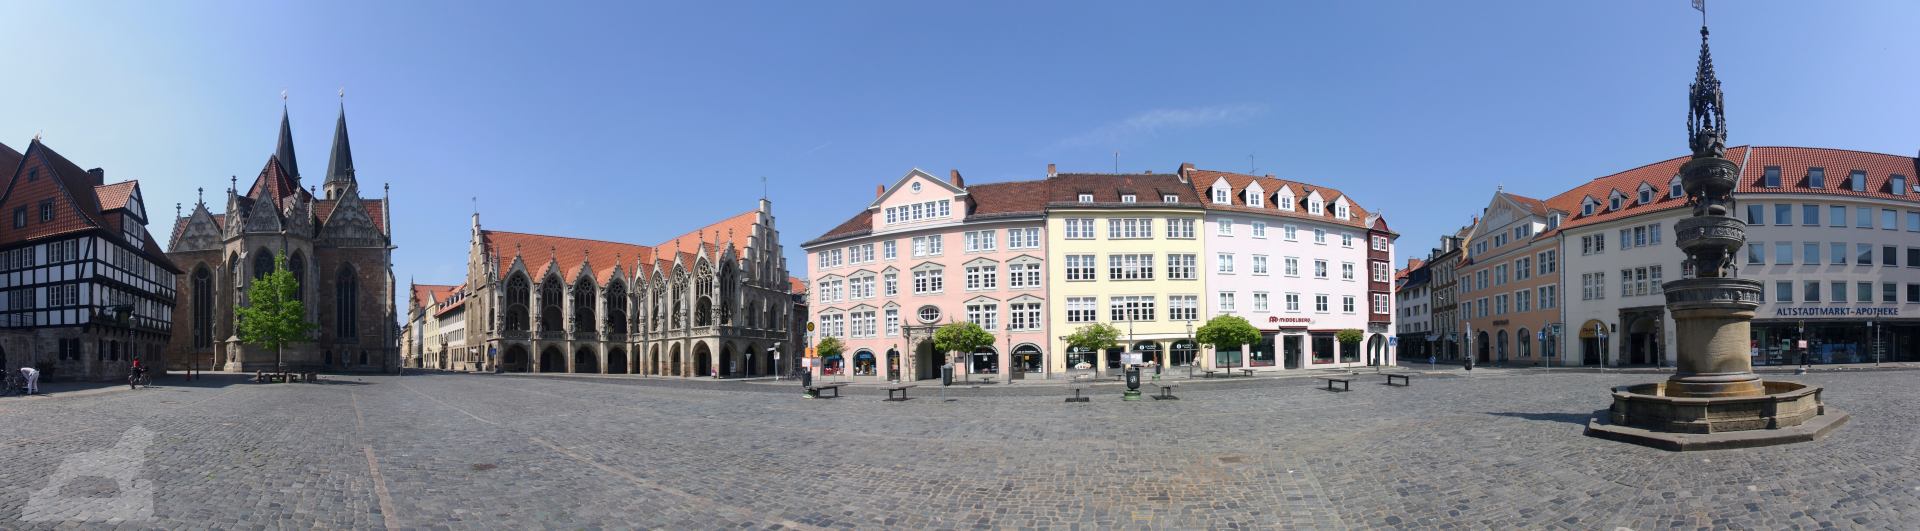 Panorama Alstadtmarkt